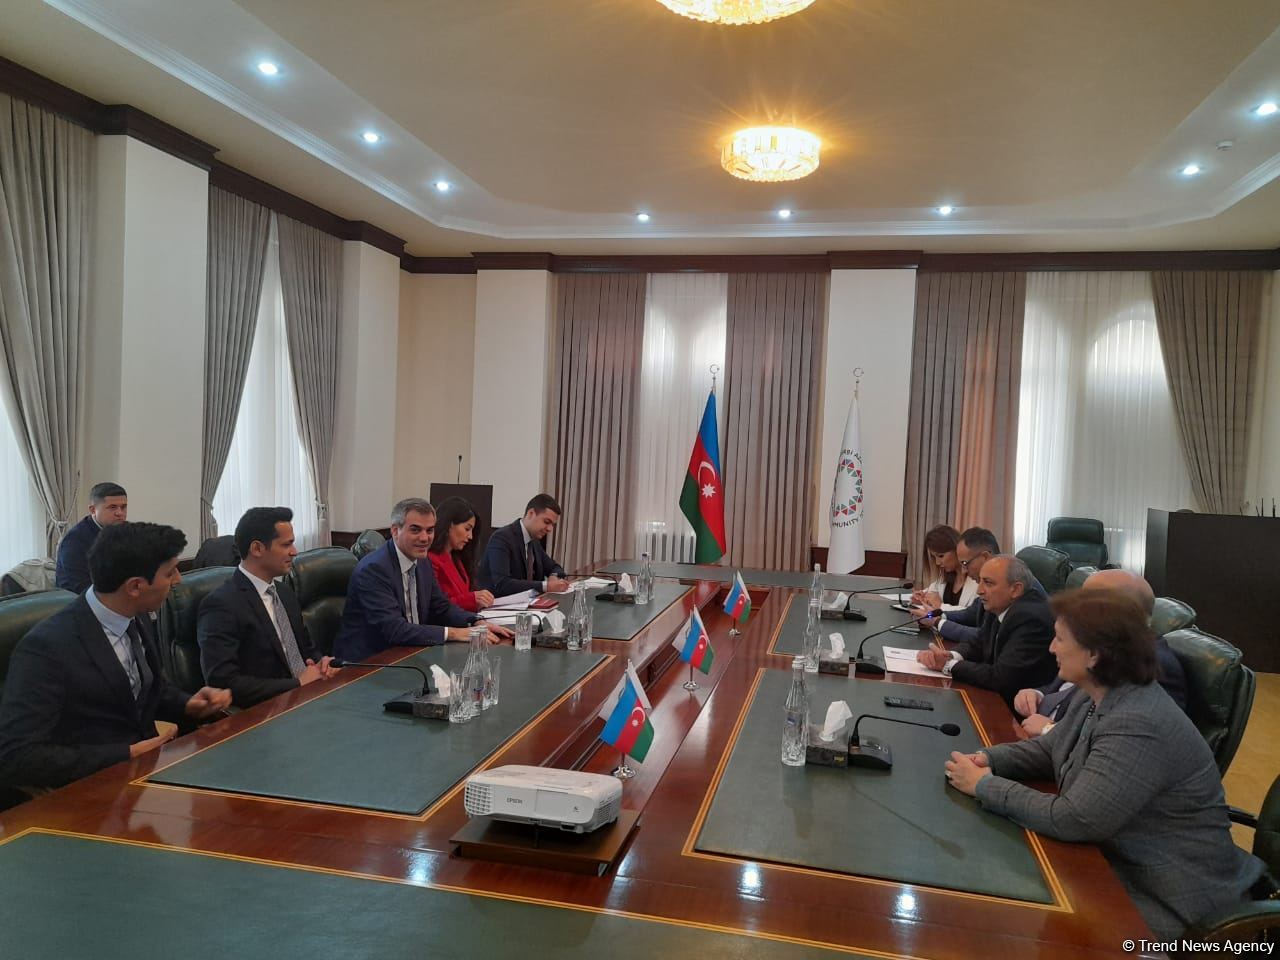 Турецкая делегация встретилась с представителями Общины Западного Азербайджана (ФОТО)